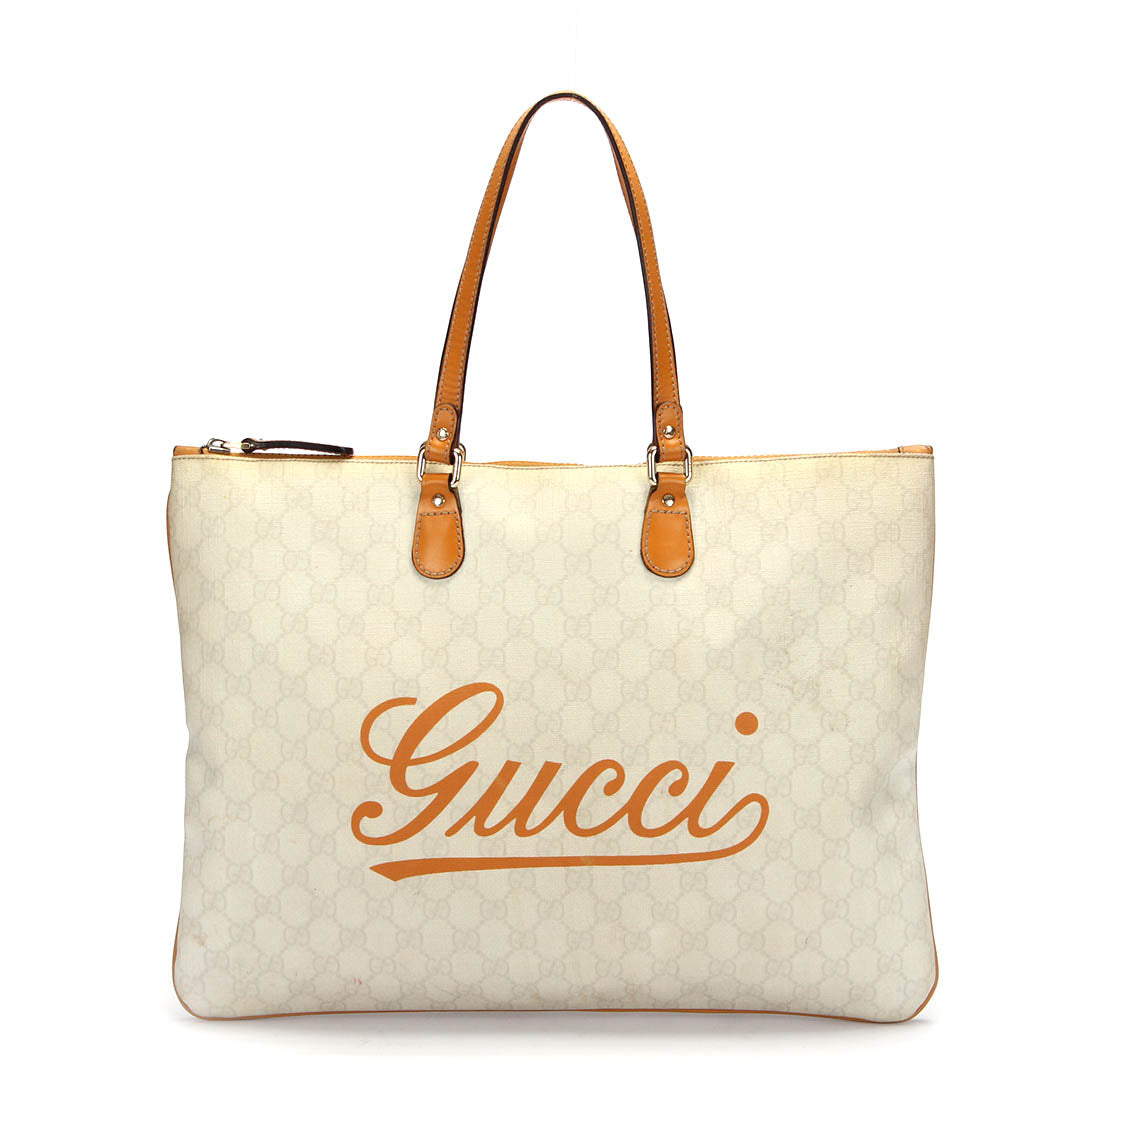 Gucci Tote袋212188